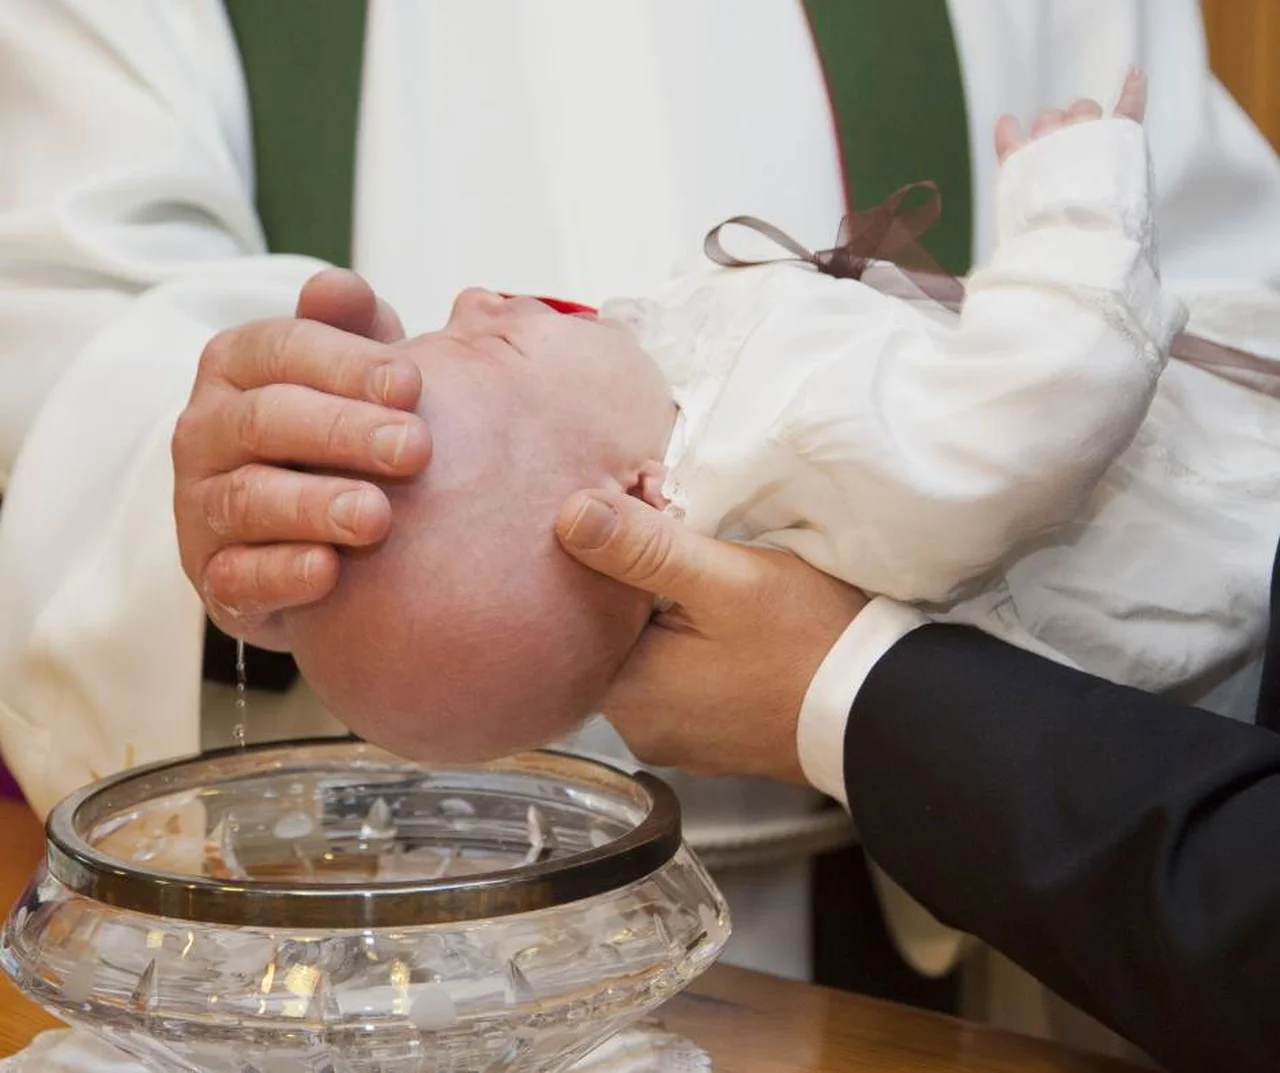 Czy można odmówić bycia rodzicem chrzestnym? Znamy możliwe konsekwencje odmowy.